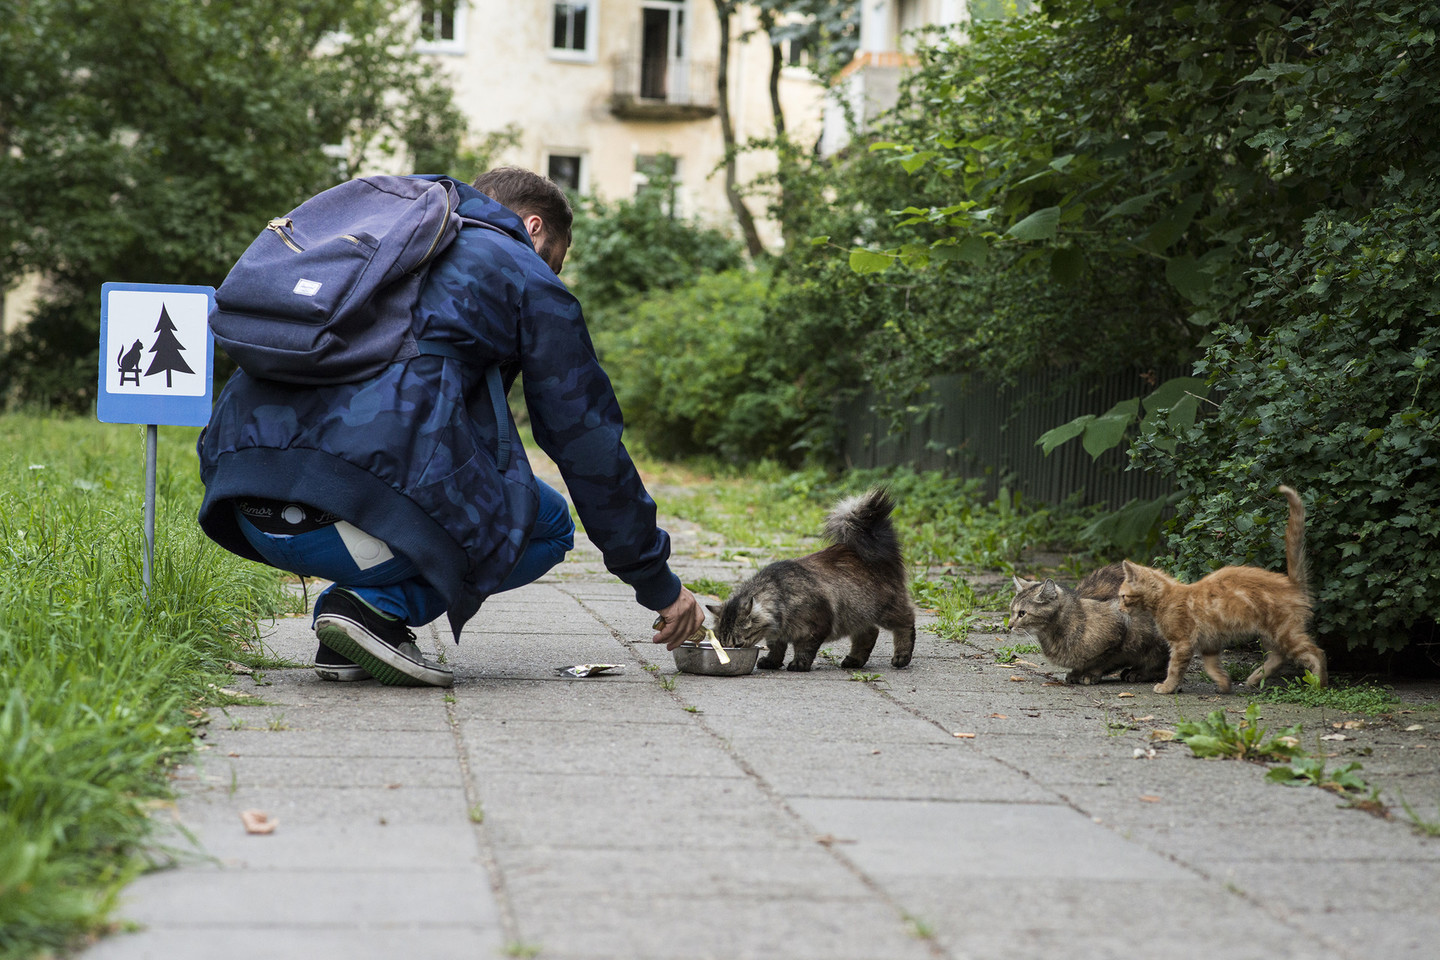 Poilsiavietė katėms. Projektas #TINYROADSIGN – kelio ženklai mieste gyvenantiems gyvūnams.<br>ViDA Press nuotr.